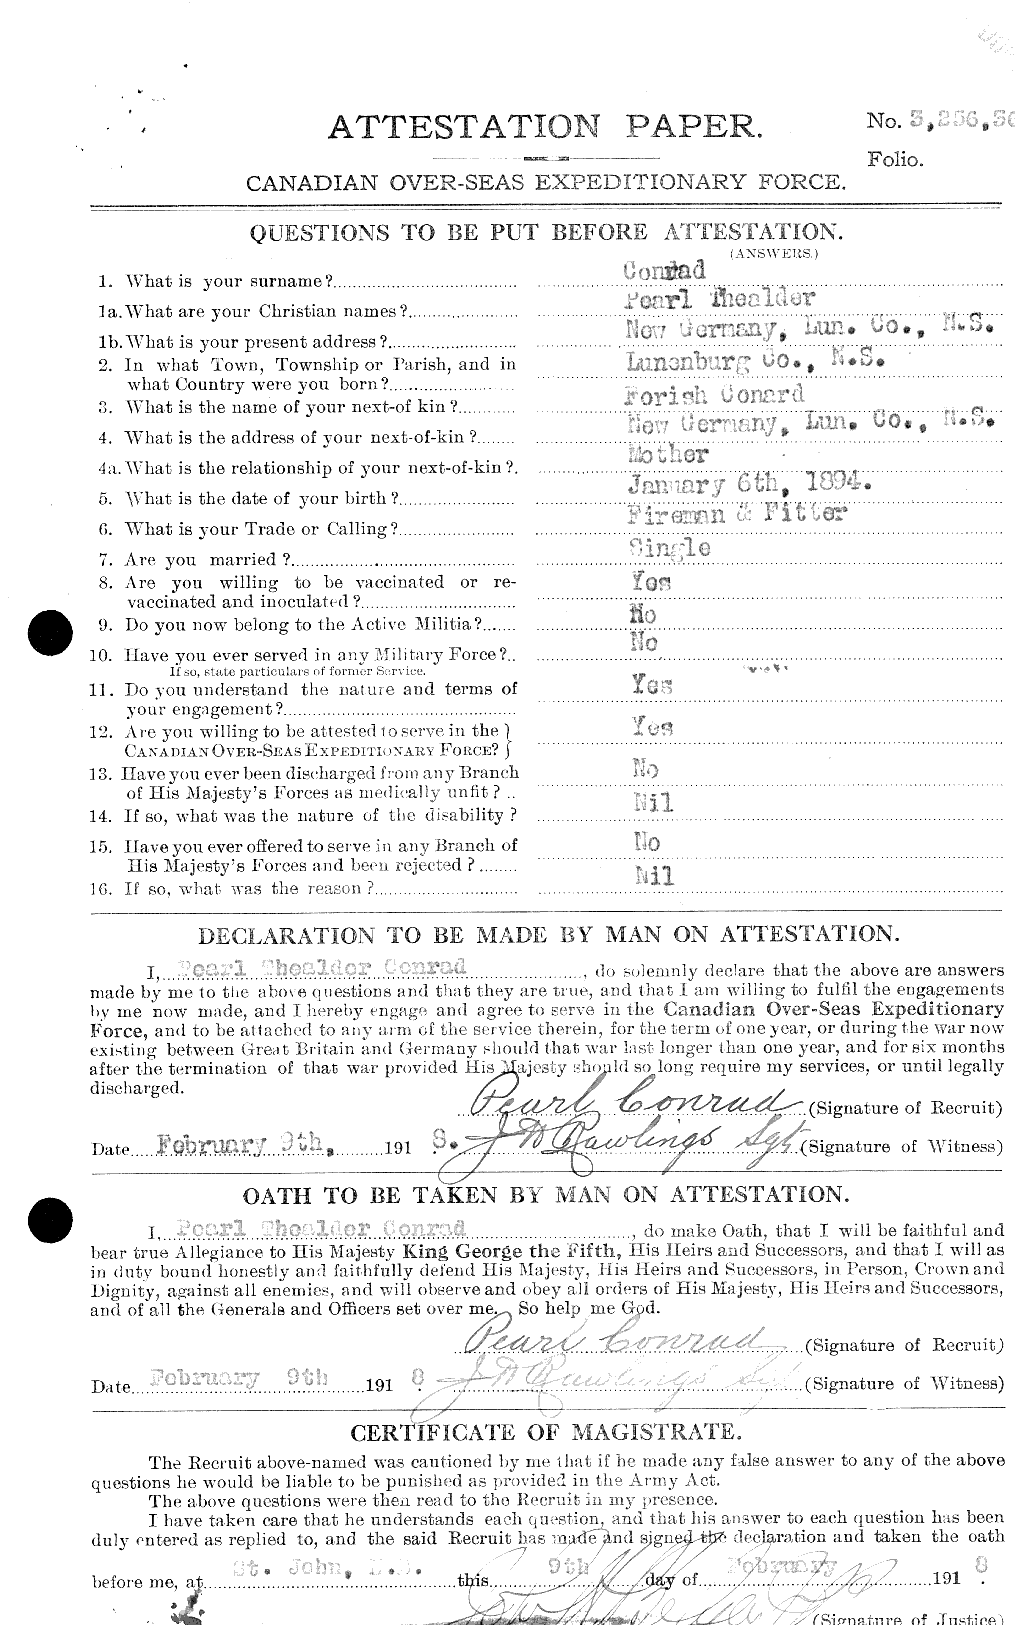 Dossiers du Personnel de la Première Guerre mondiale - CEC 036144a